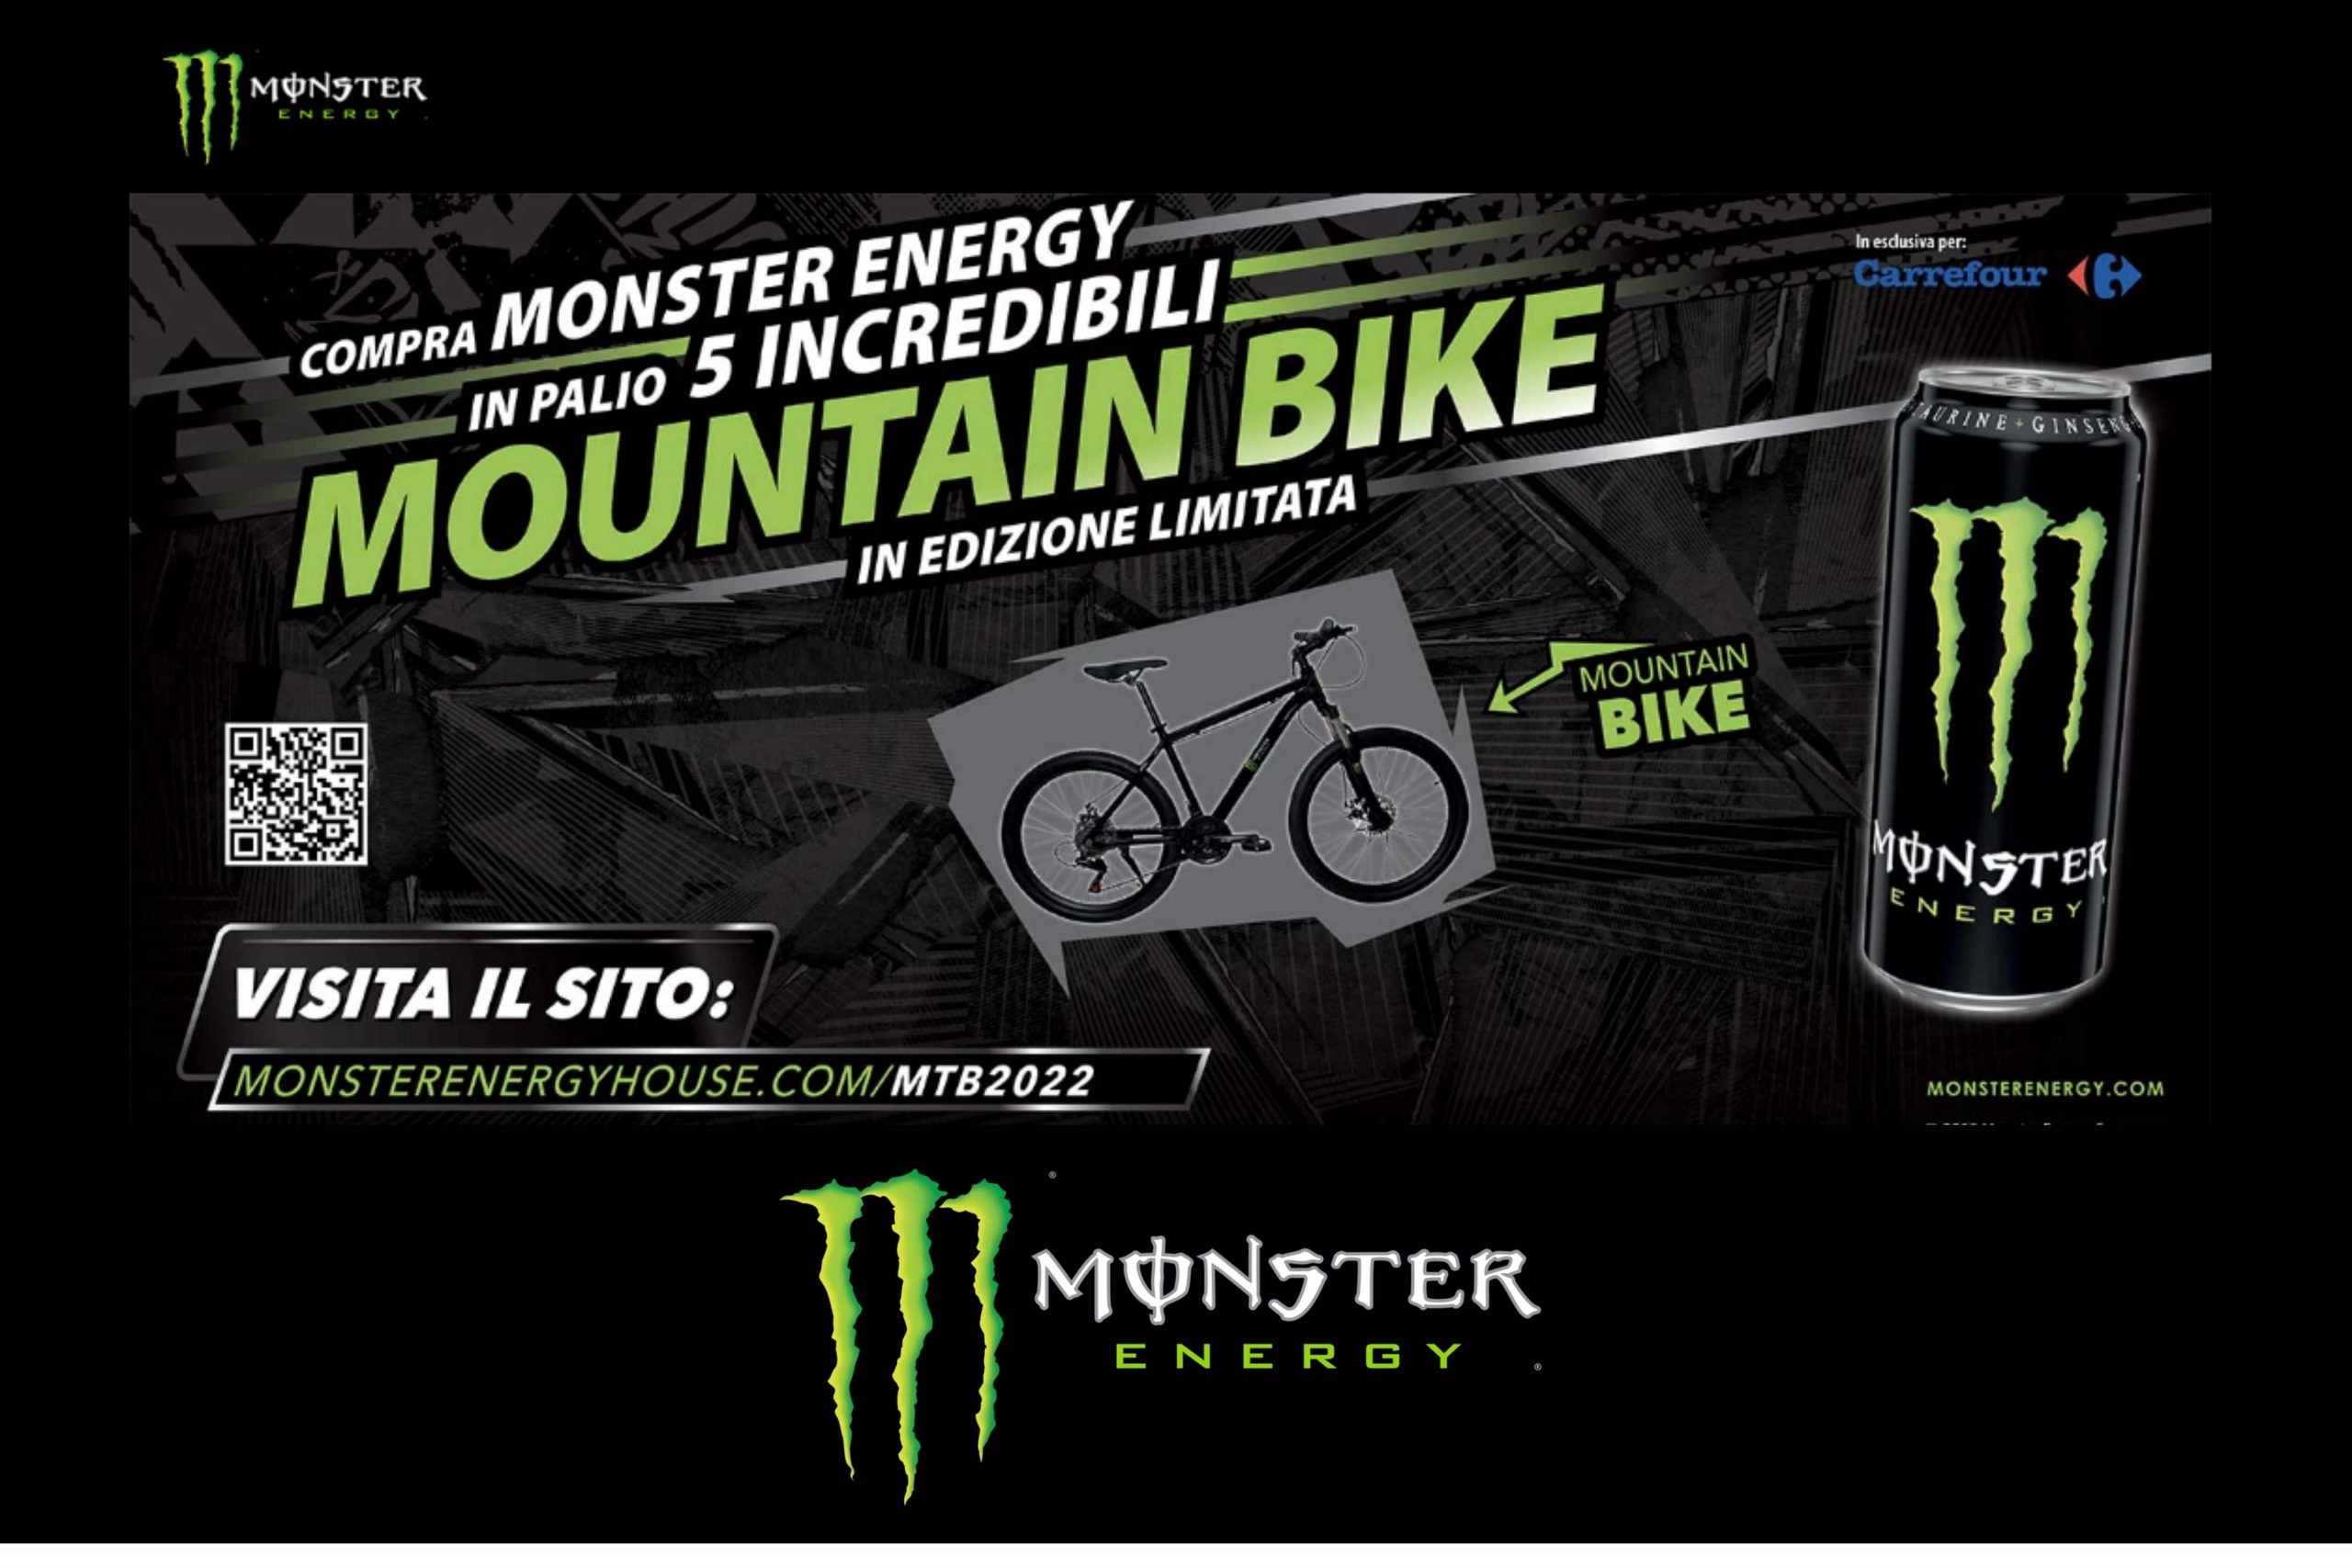 Concorso a premi “Compra Monster e puoi vincere la Mountain Bike”